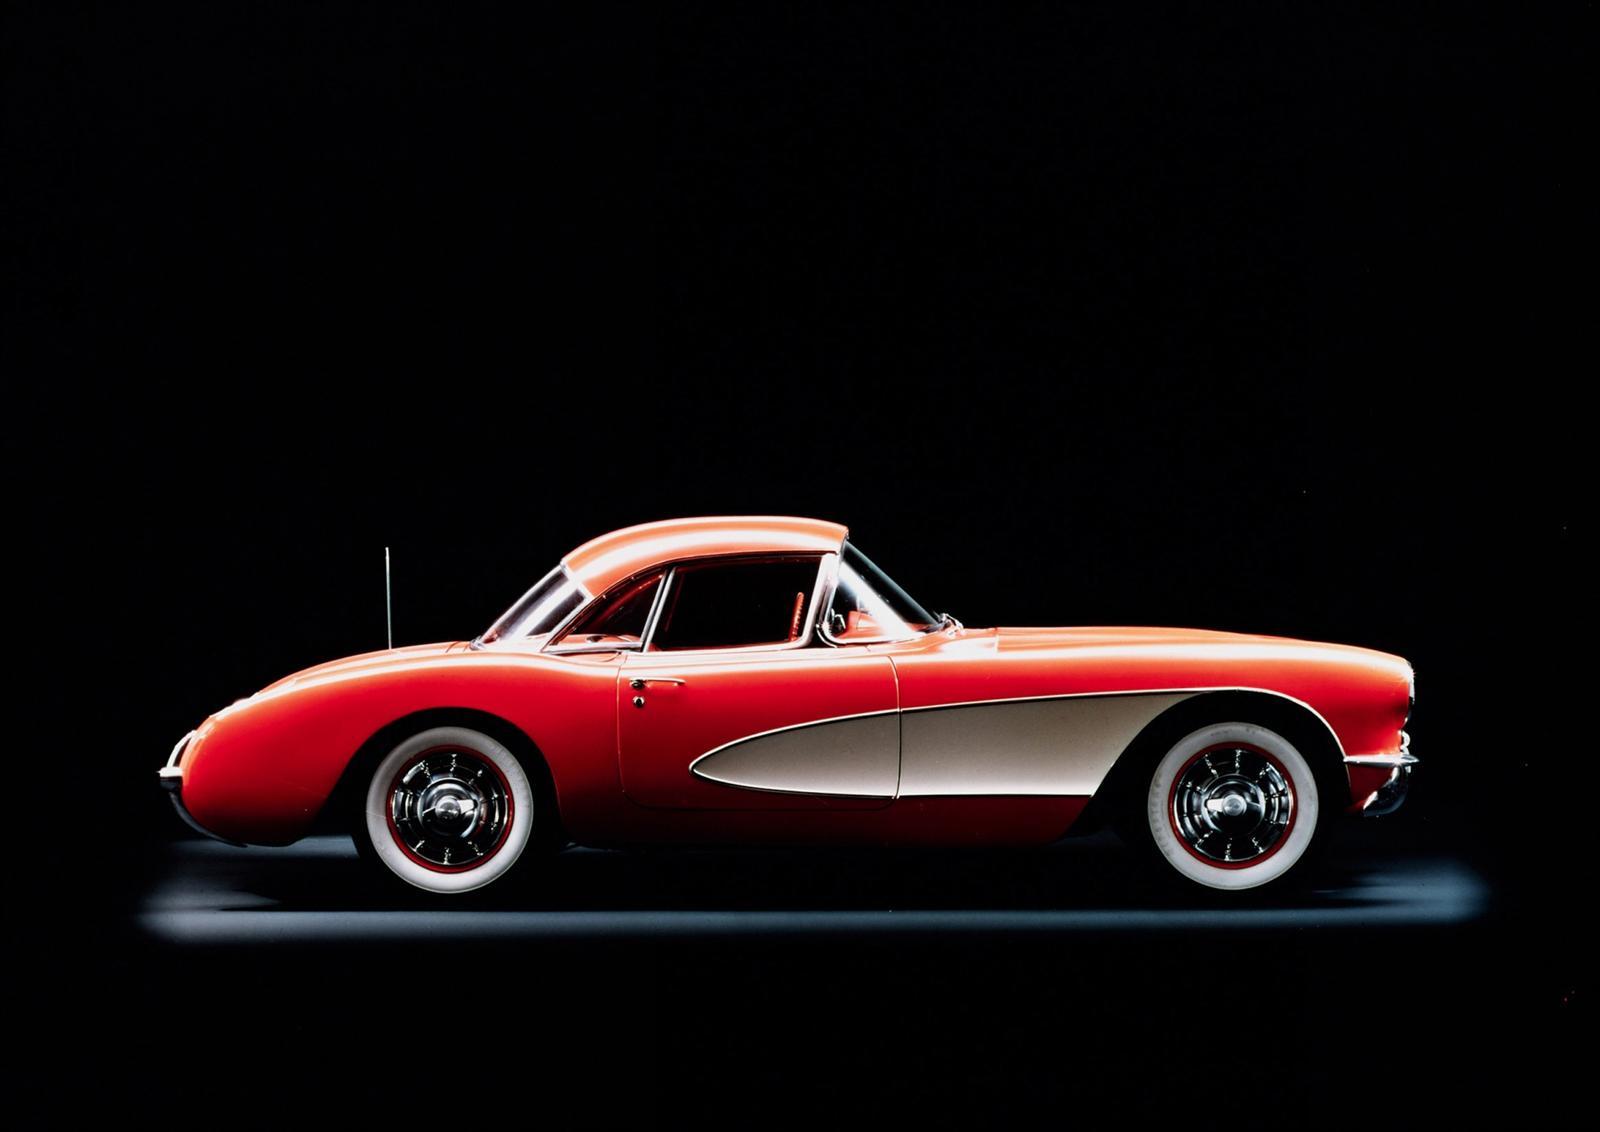 In 1956, Corvette C1 primeste cateva modificari estetice importante